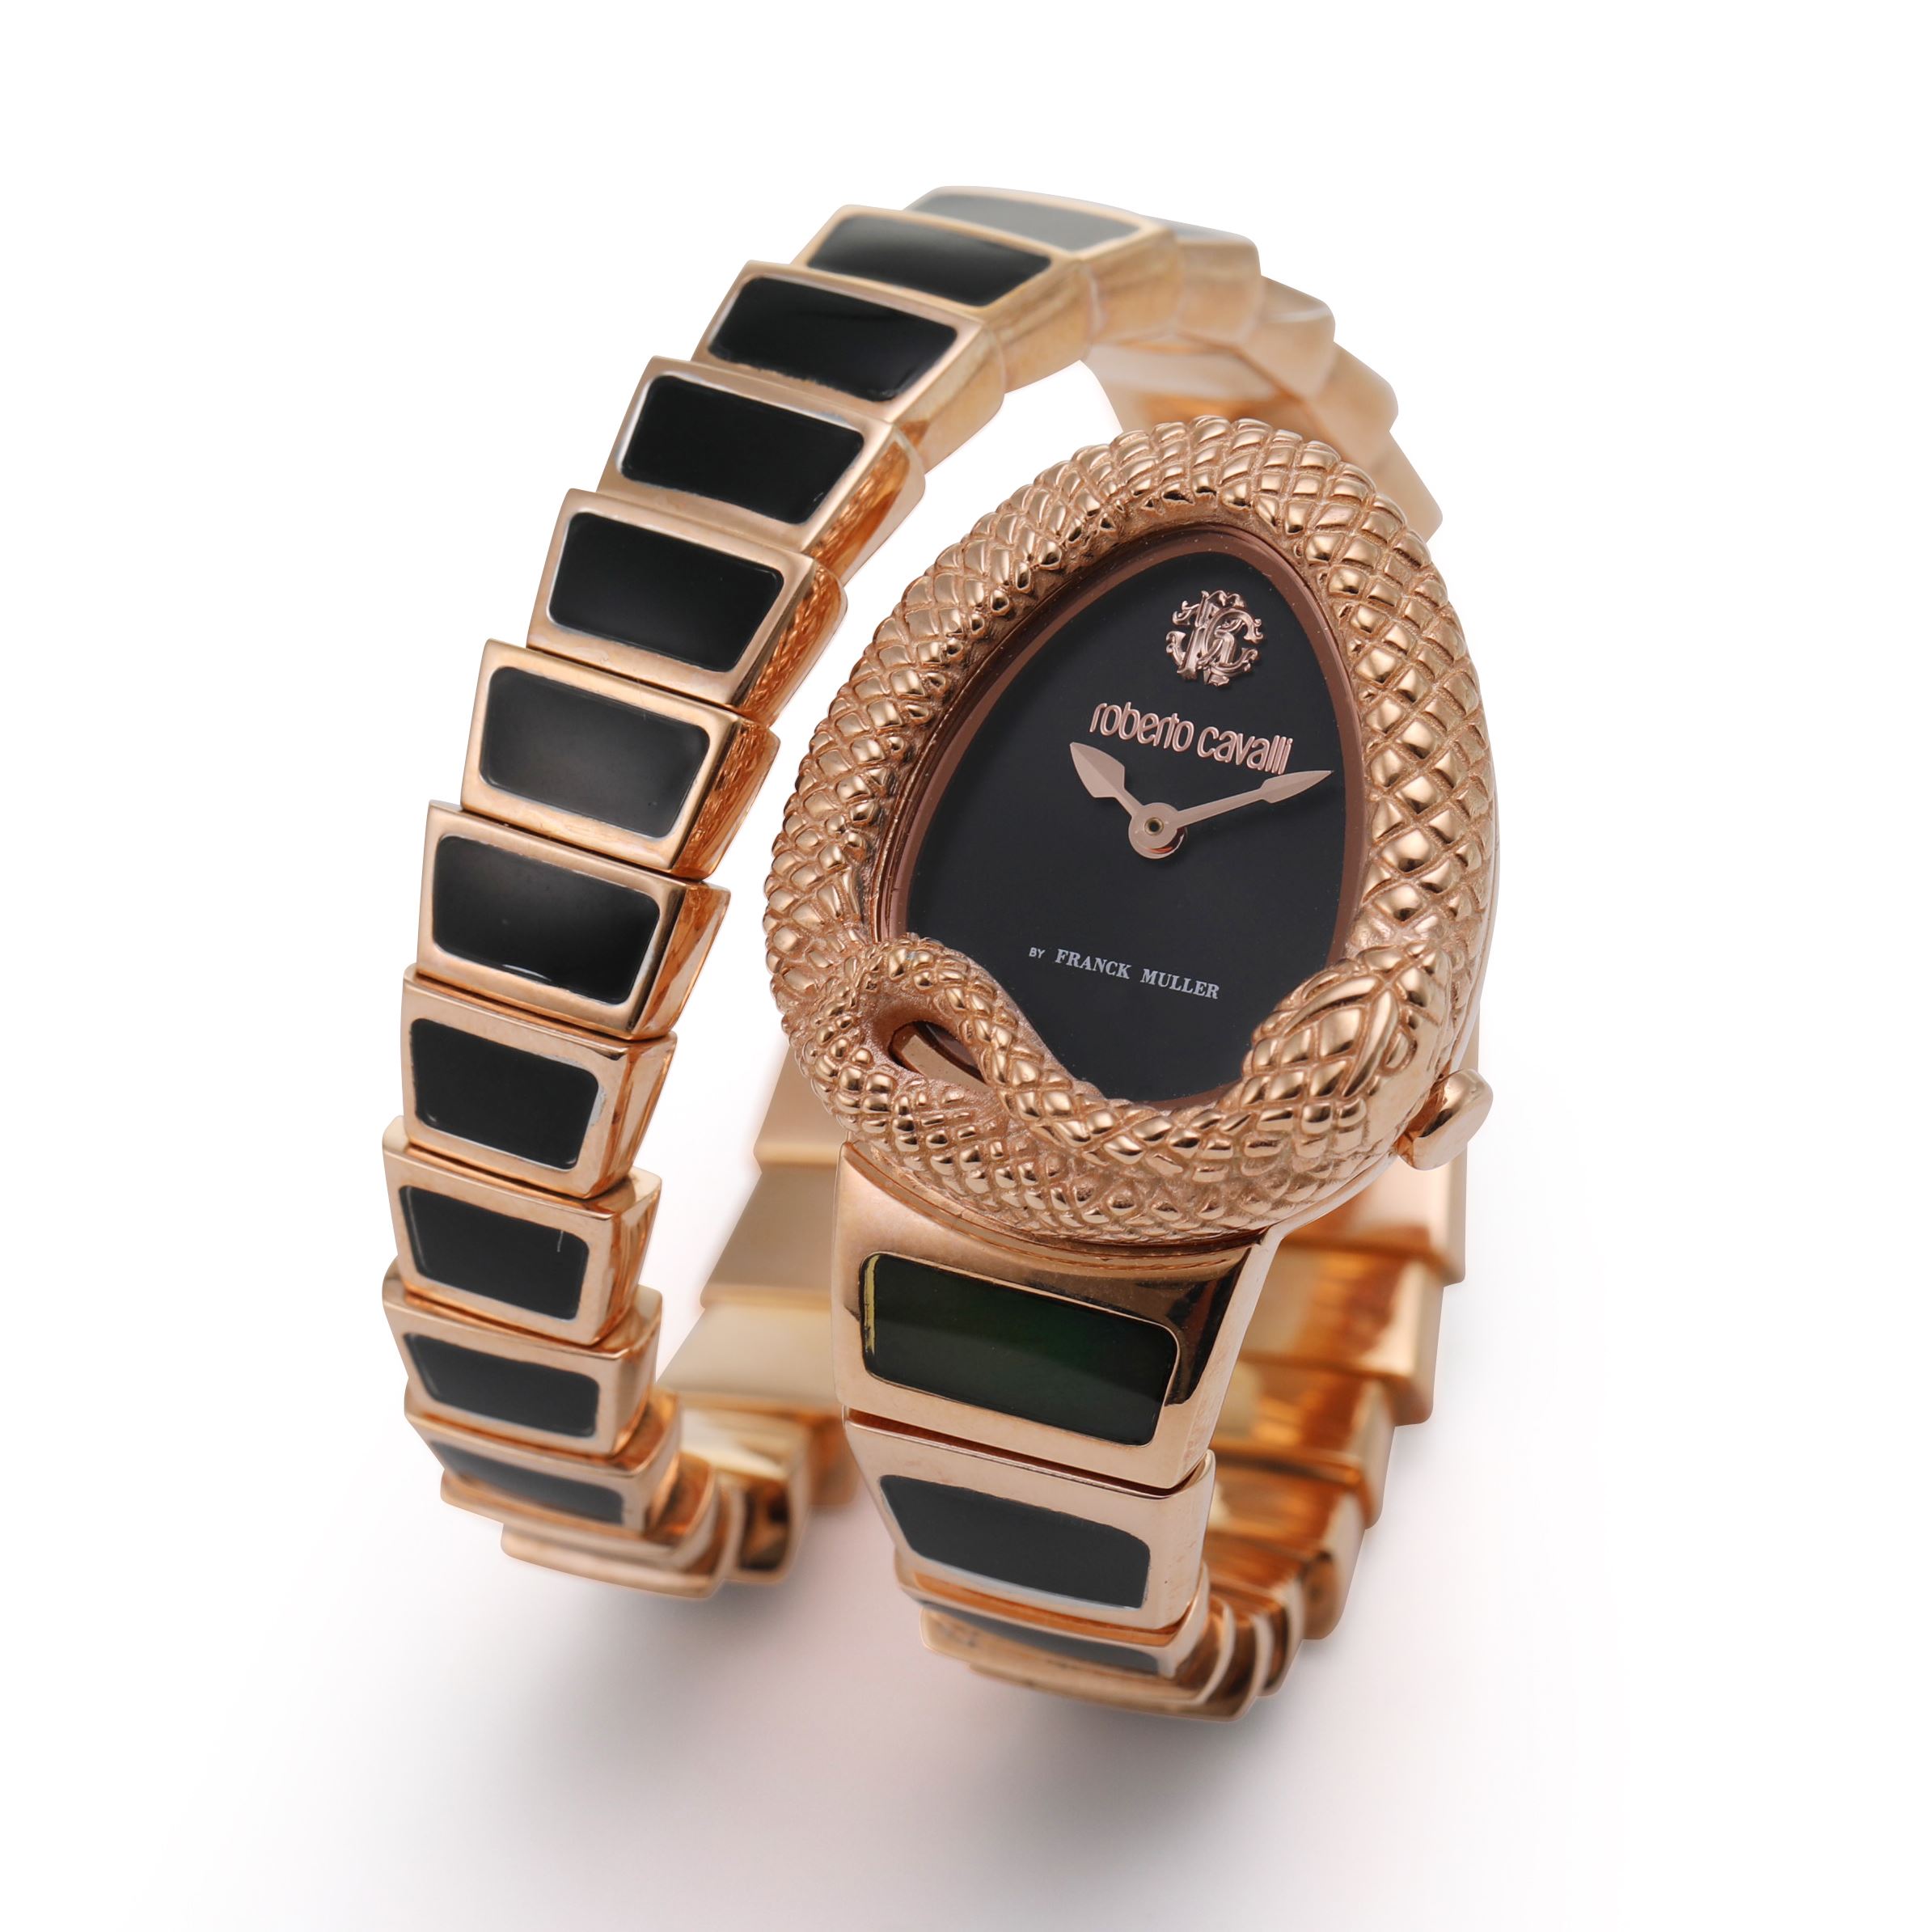 新品 人気ブランド ロヴェルトカヴァリ 婦人腕時計 ゴールドトーン